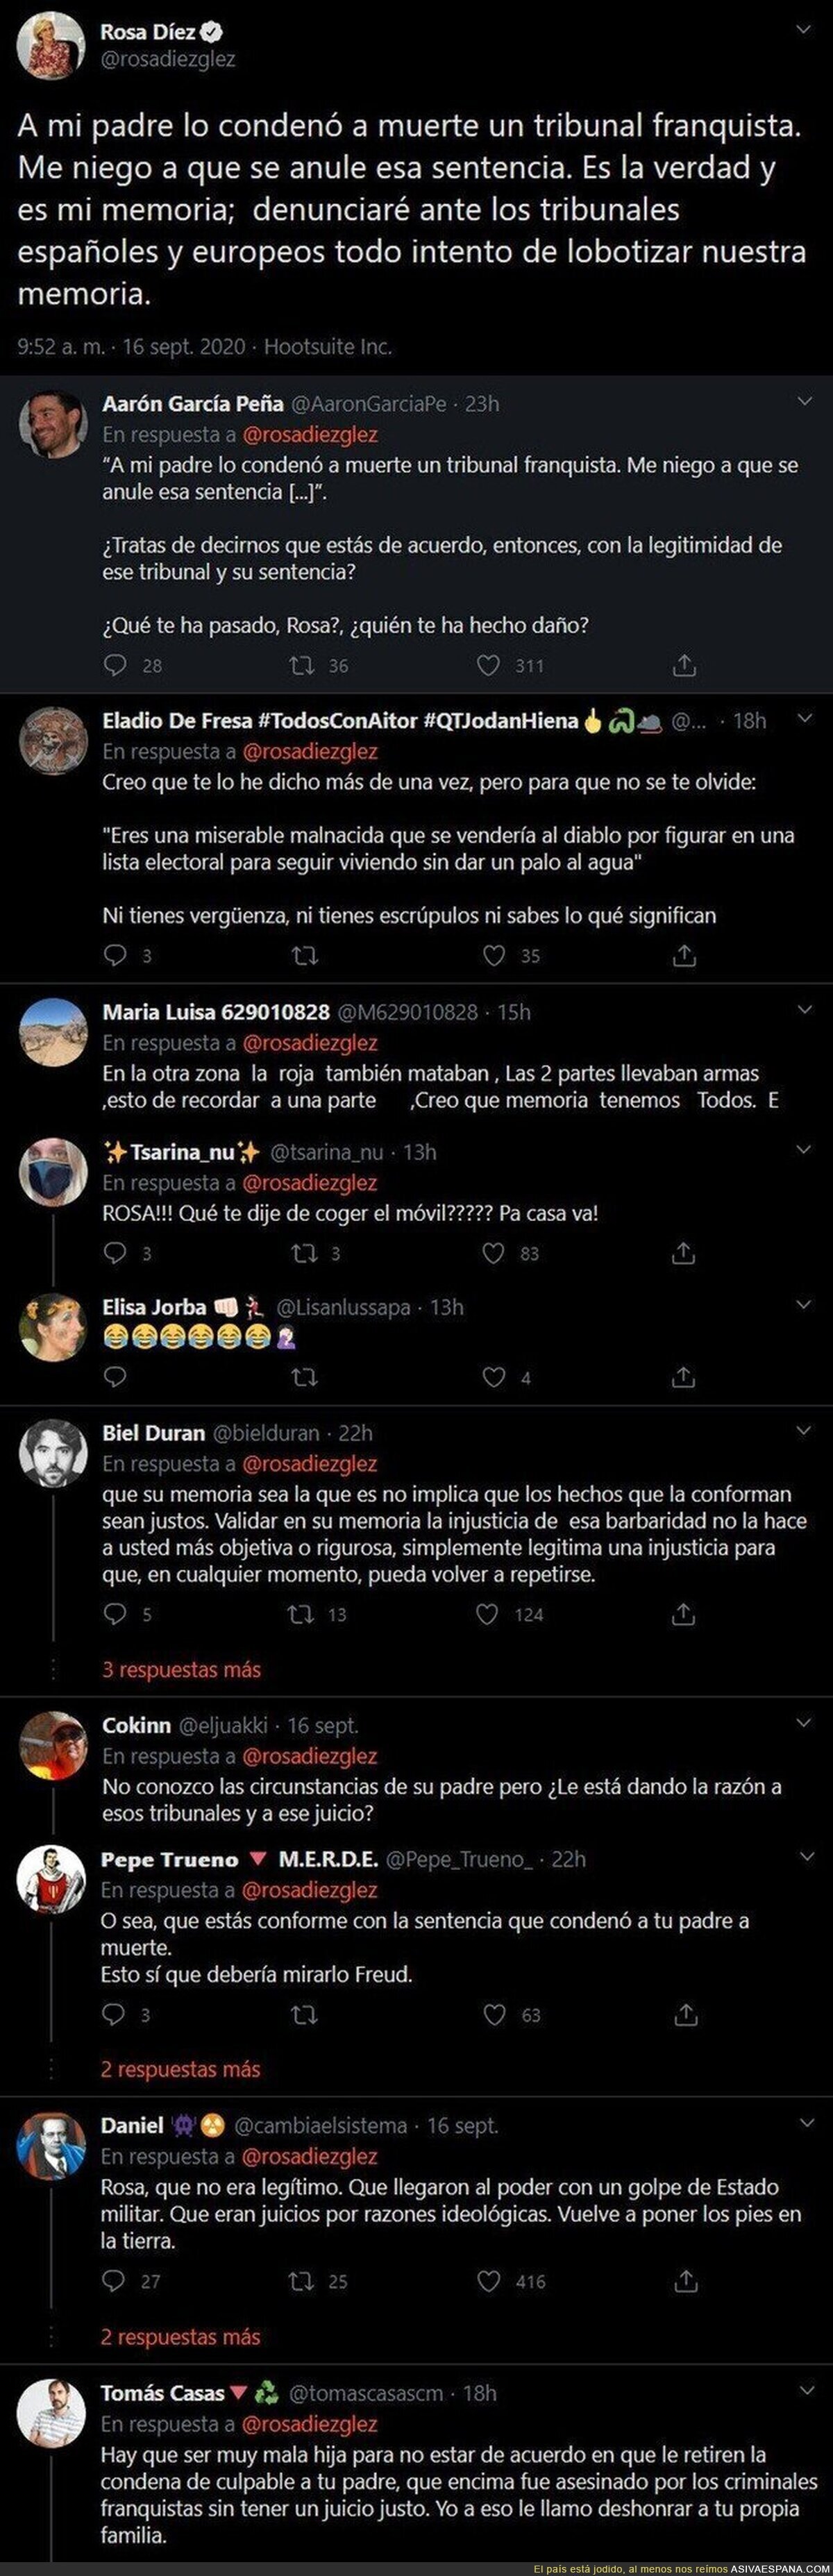 Rosa Díez enloquece por completo y justifica la muerte de su padre por el franquismo para atacar al Gobierno con este tuit